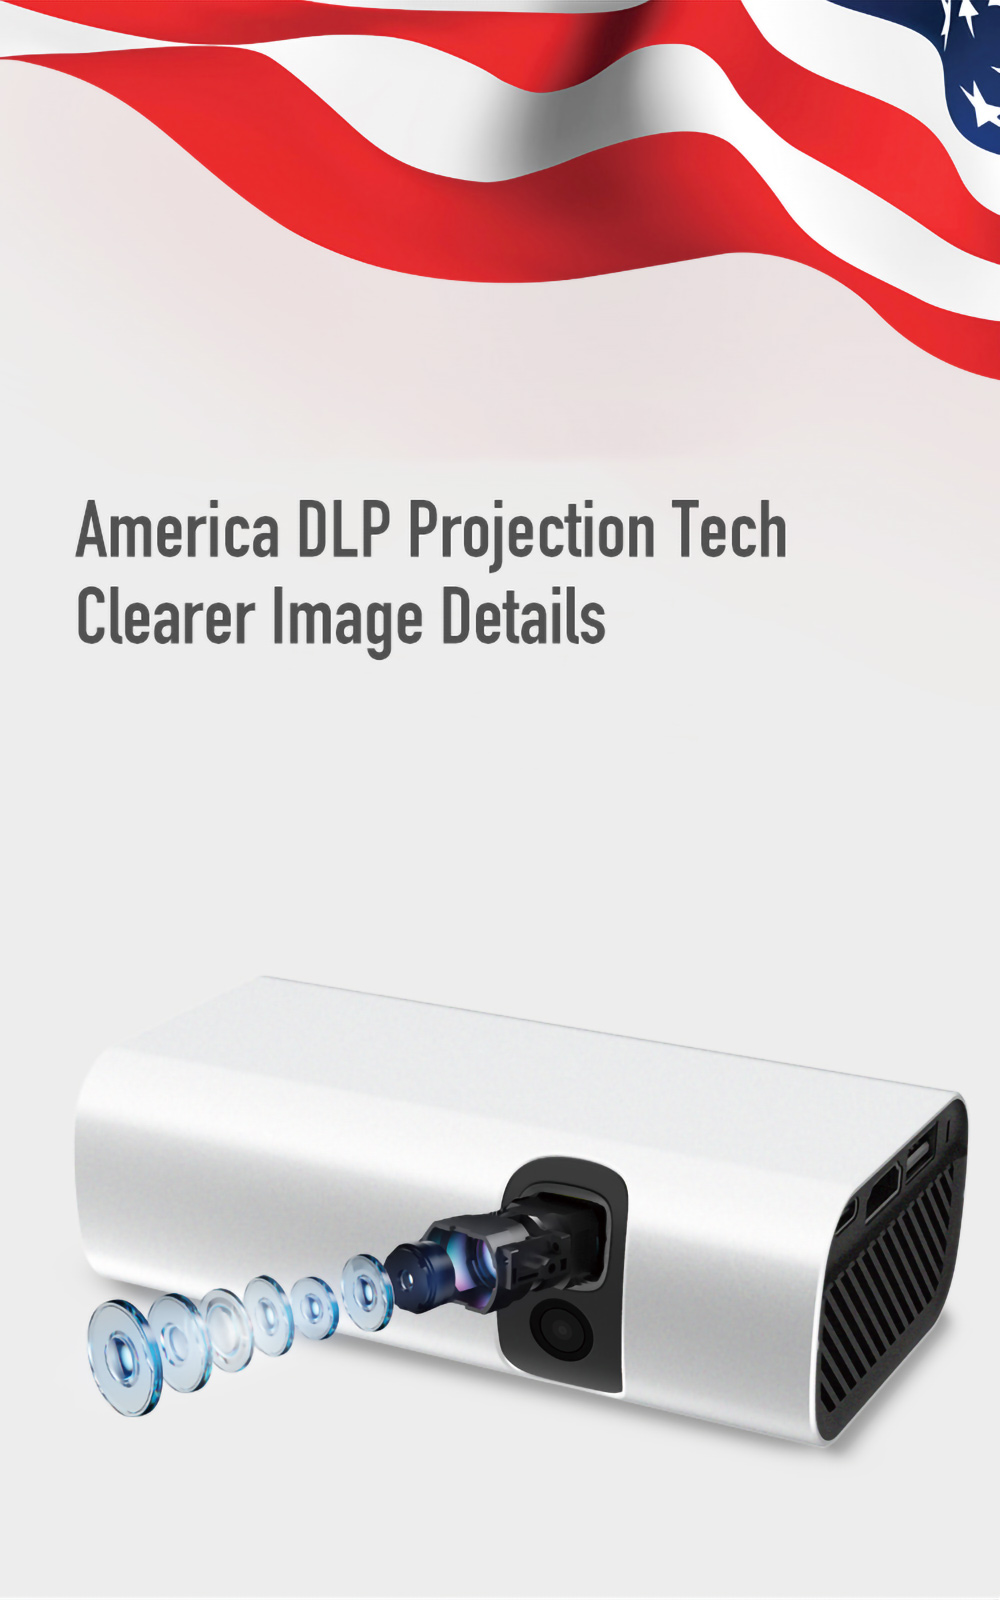 Портативный умный проектор Lenovo LXP200, проектор для домашнего офиса, поддержка разрешения 1080P, коррекция трапецеидальных искажений 200ANSI люменов